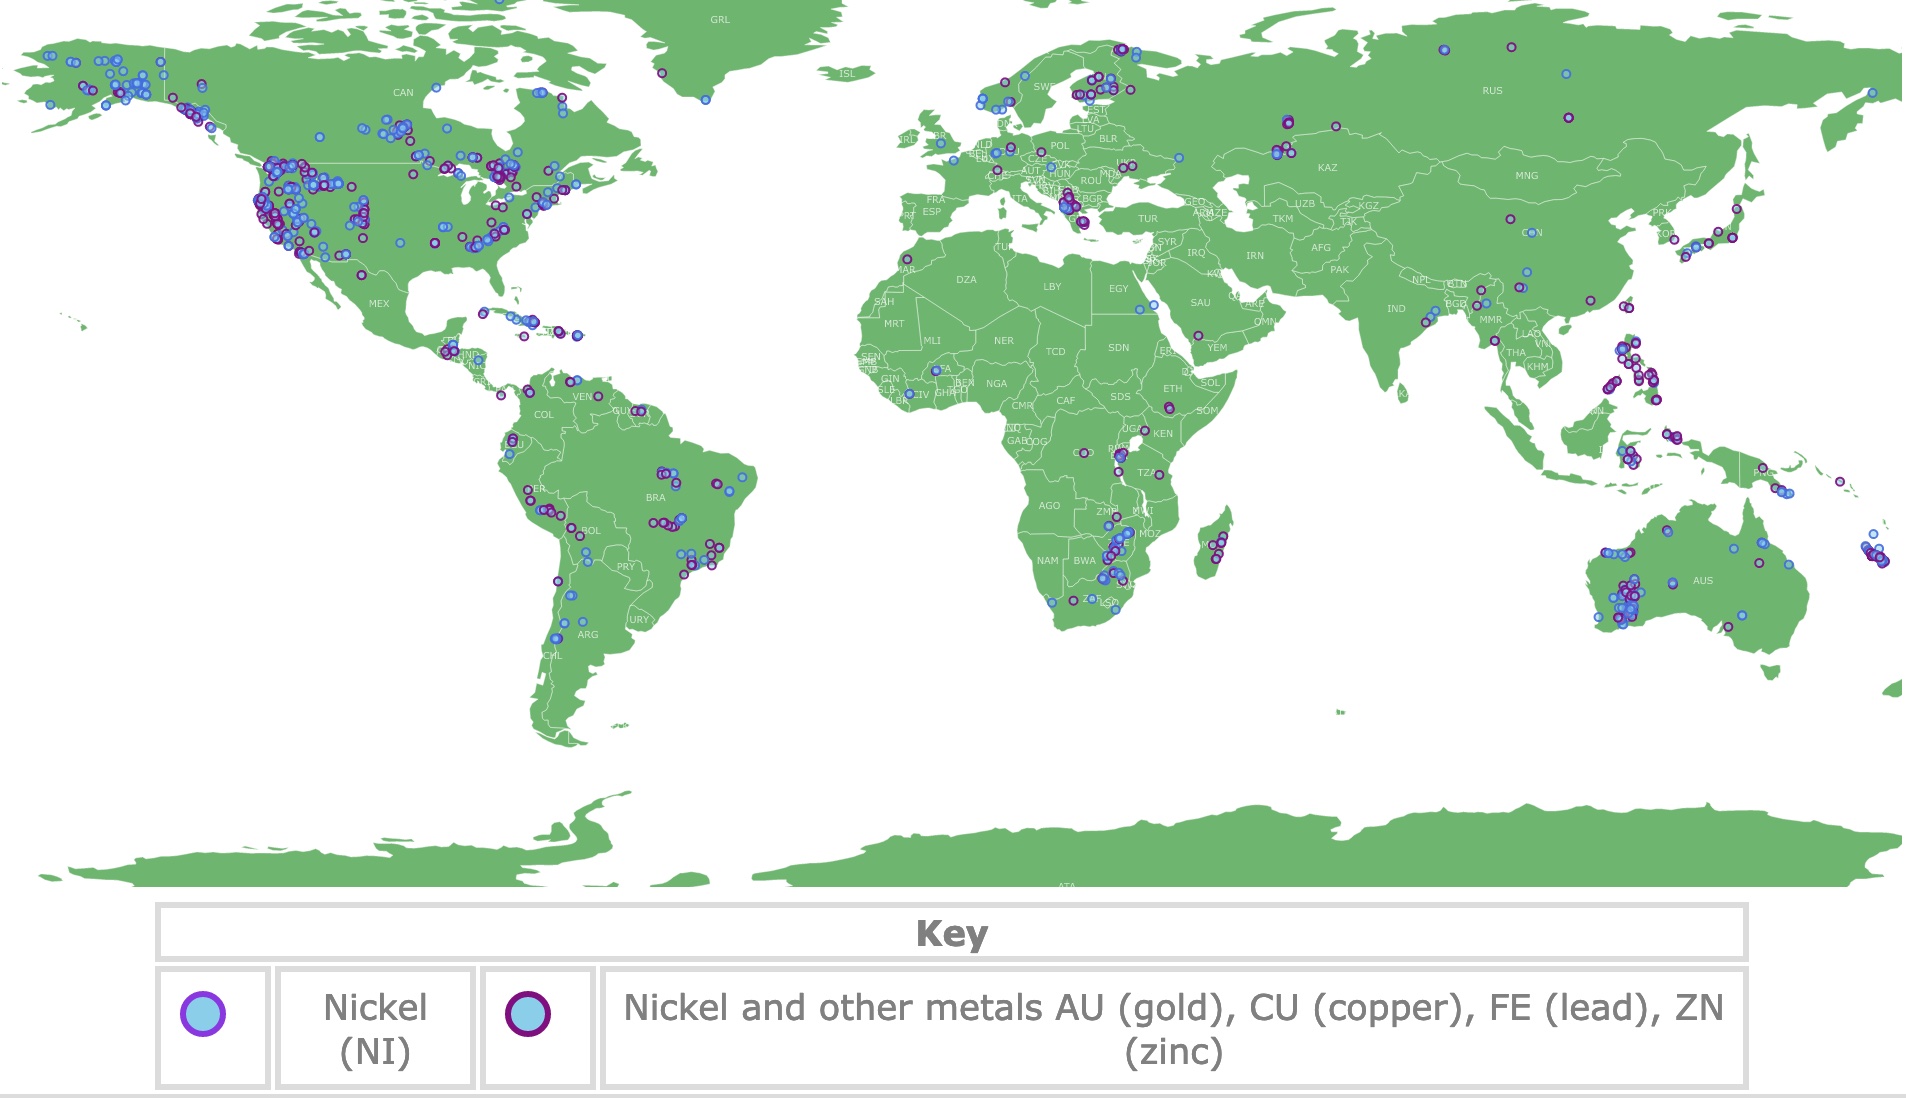 Map of Nickel Deposits worldwide